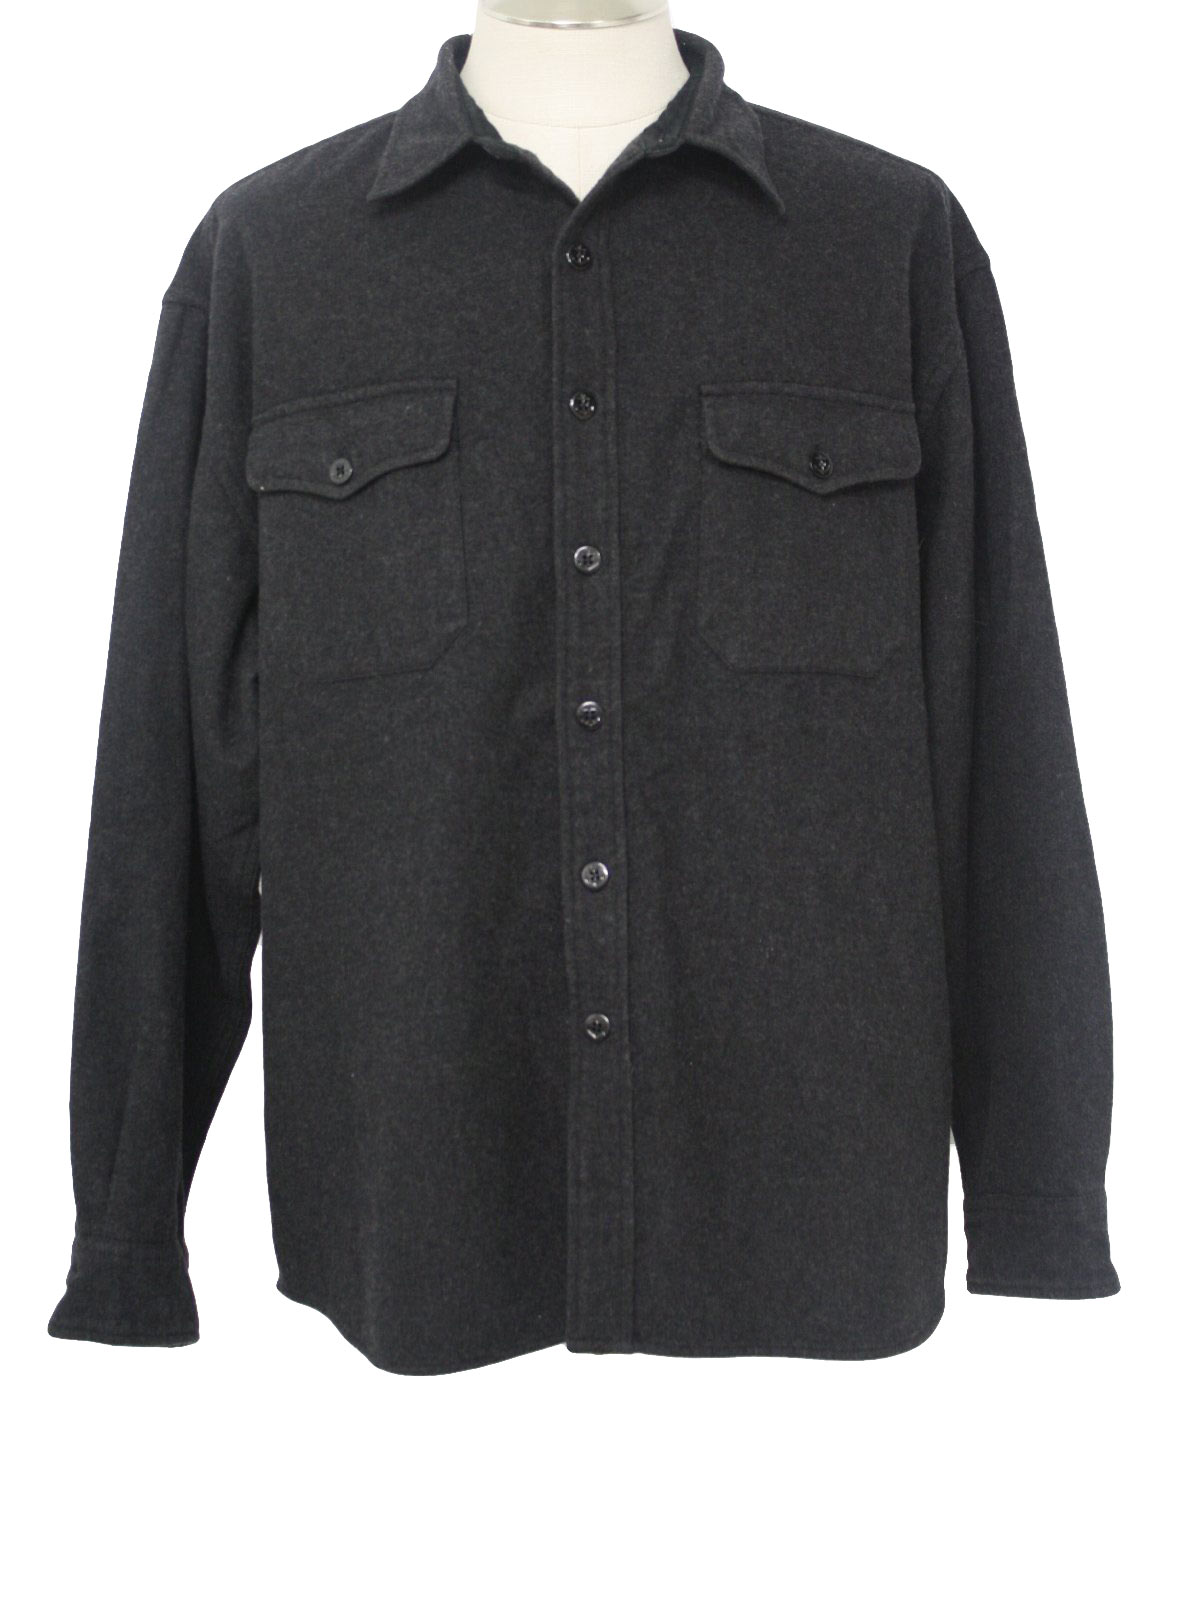 Nineties Gap Jacket: 90s -Gap- Mens dark heather charcoal wool blend ...